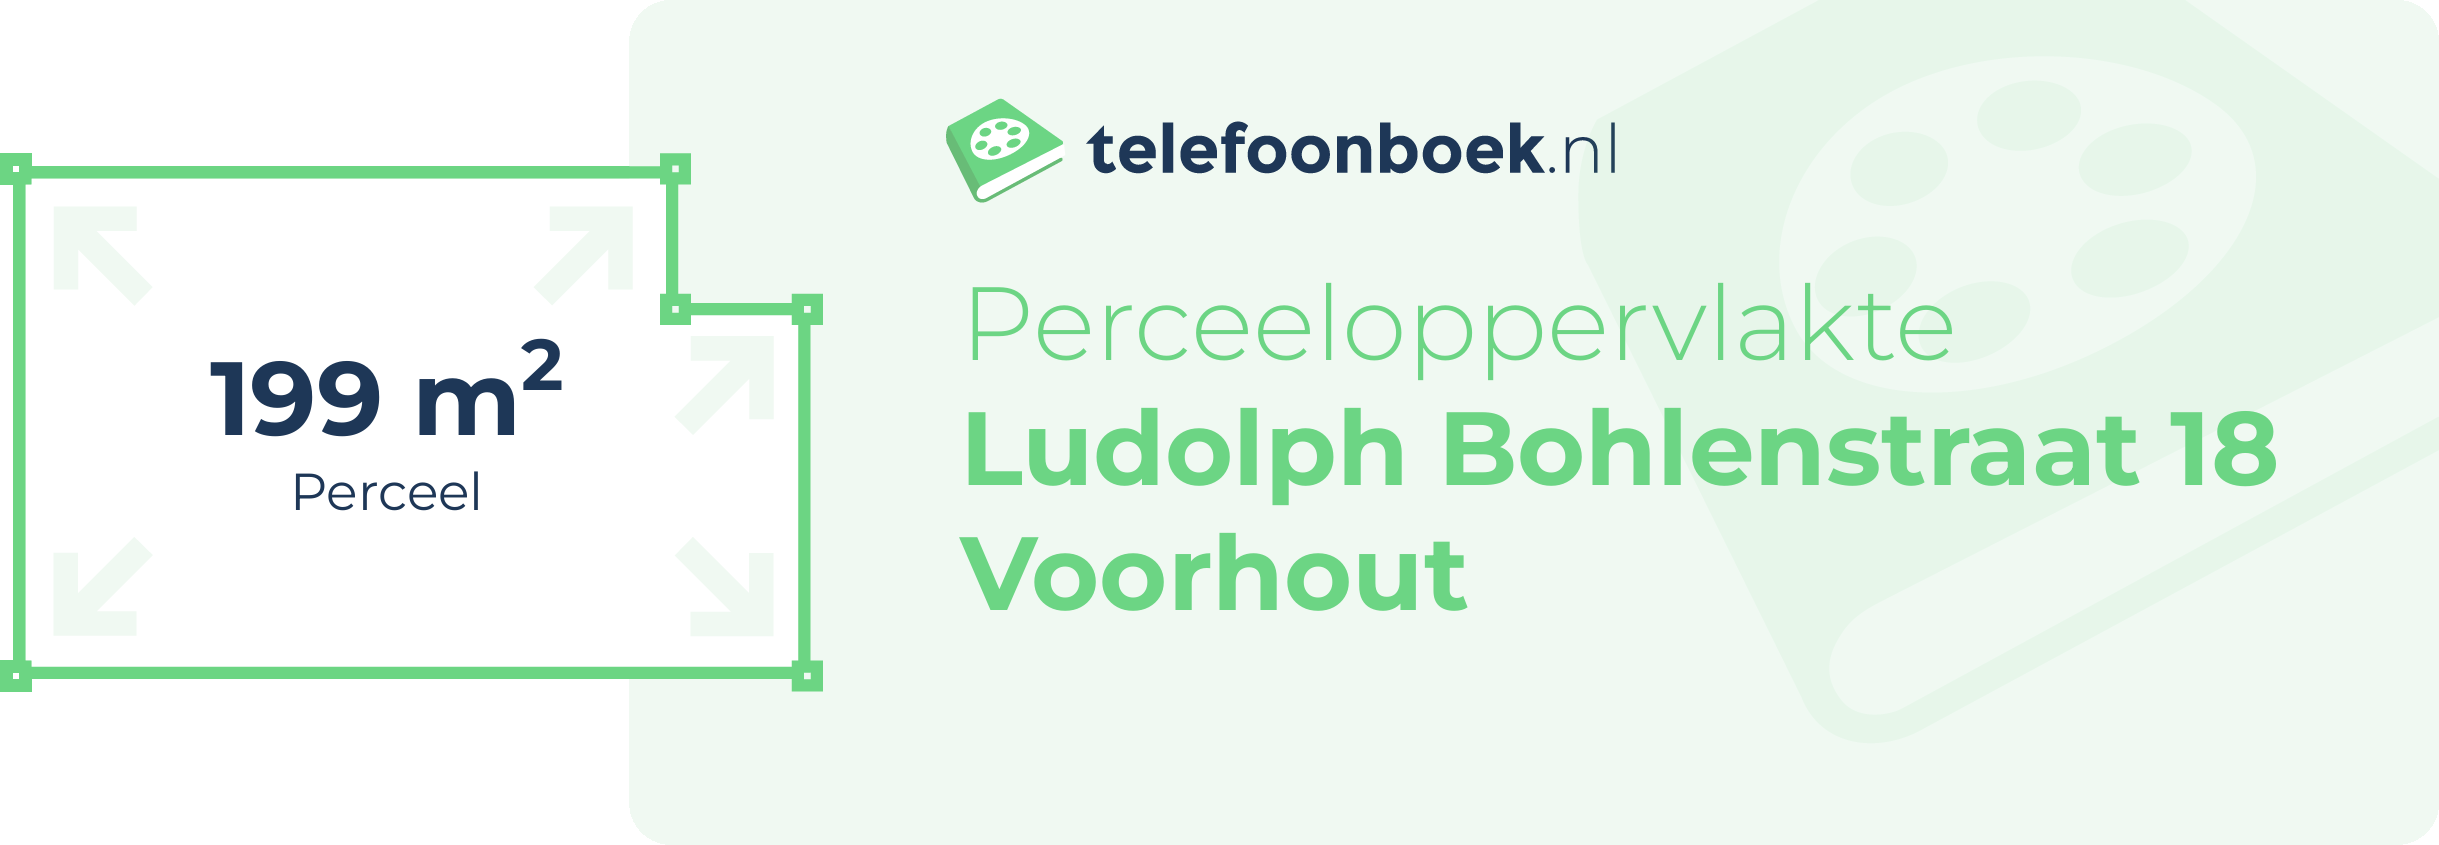 Perceeloppervlakte Ludolph Bohlenstraat 18 Voorhout